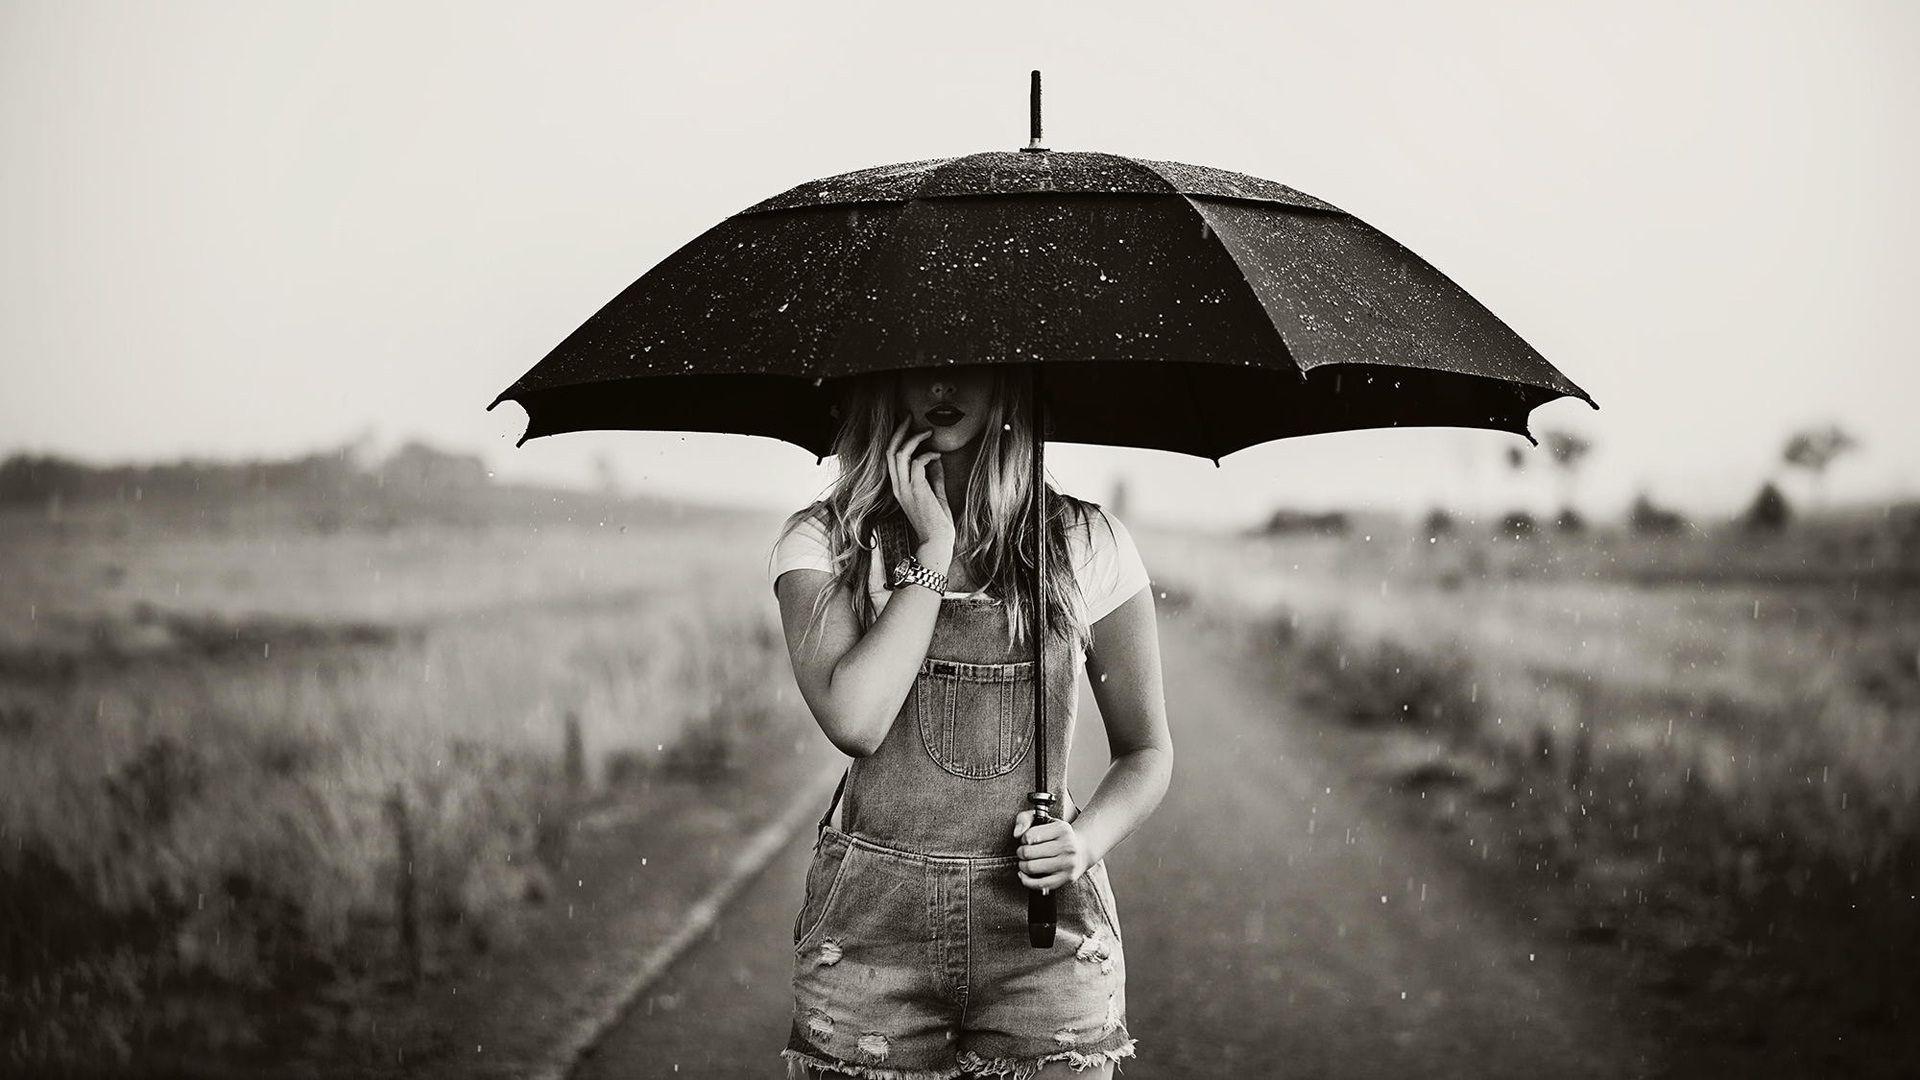 Best of Sad Girl In Rain With Umbrella